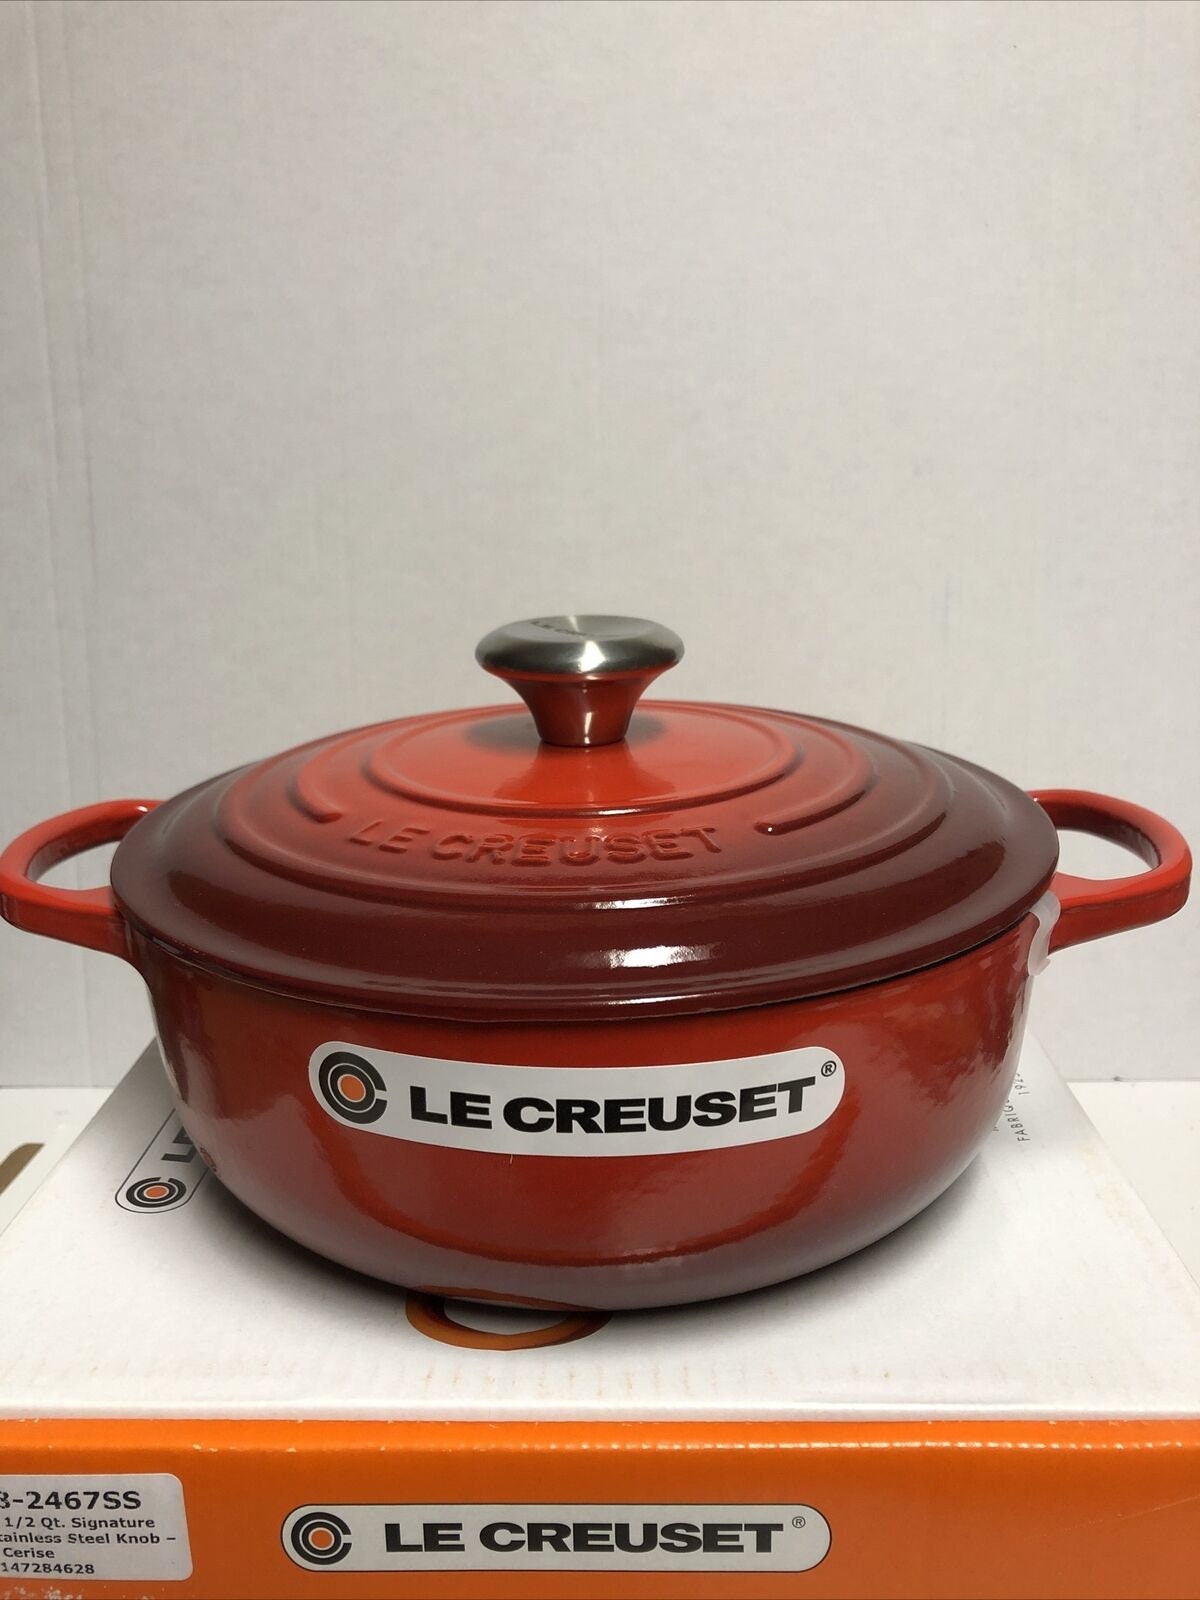 Le Creuset Signature Enameled Cast-Iron 7 1/4 QT Round Dutch Oven,  Red/Cerise